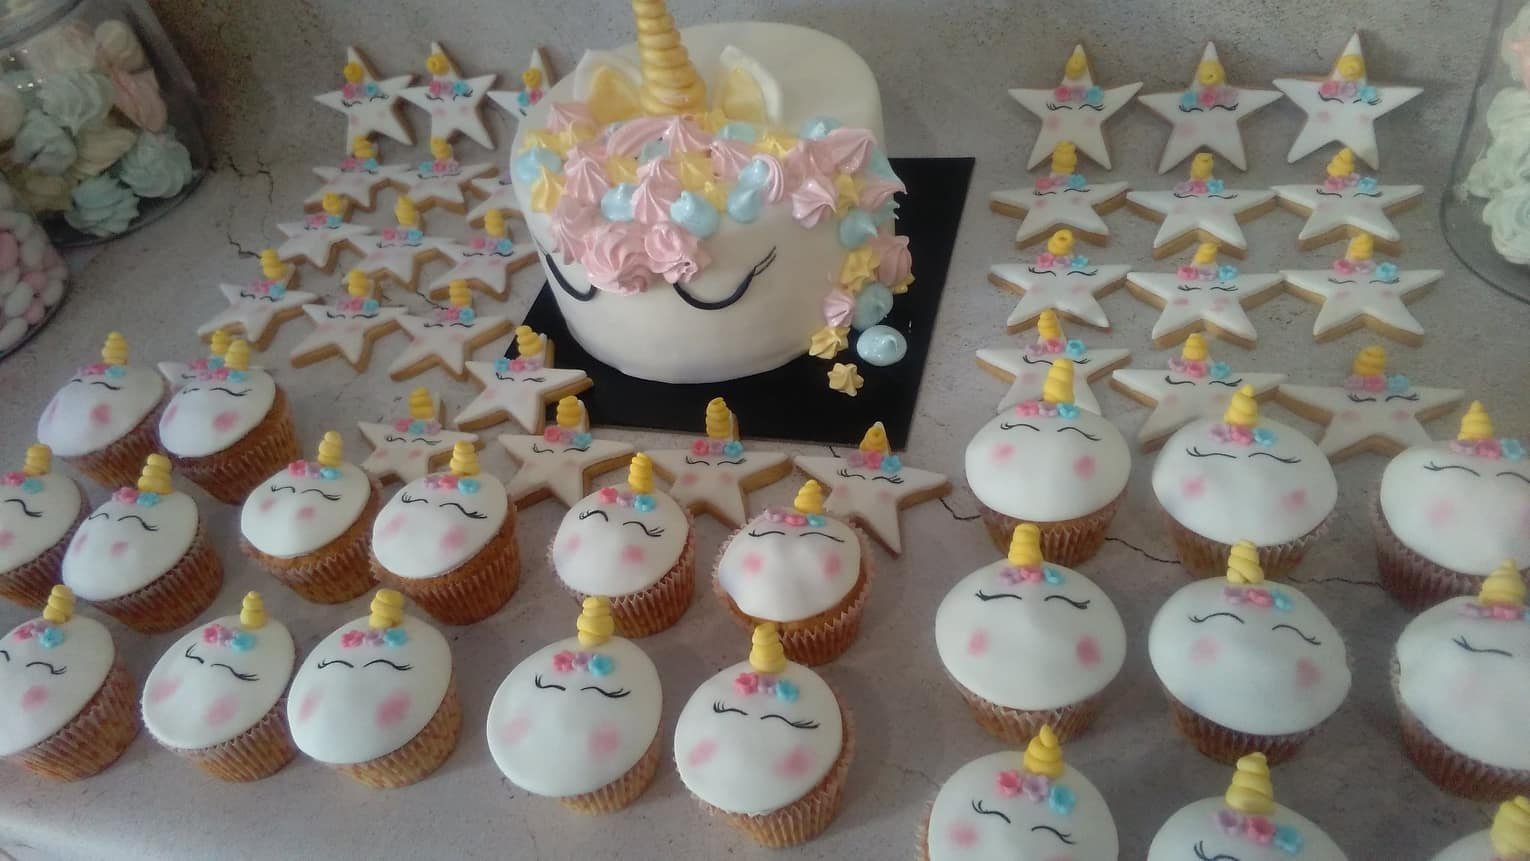 μπουφέ βάπτισης κουλουράκια και cup cakes με ζαχαρόπαστα μονόκερος, Ζαχαροπλαστειο καλαματα madame charlotte, birthday baptism unicorn theme cakes and cookies kalamata